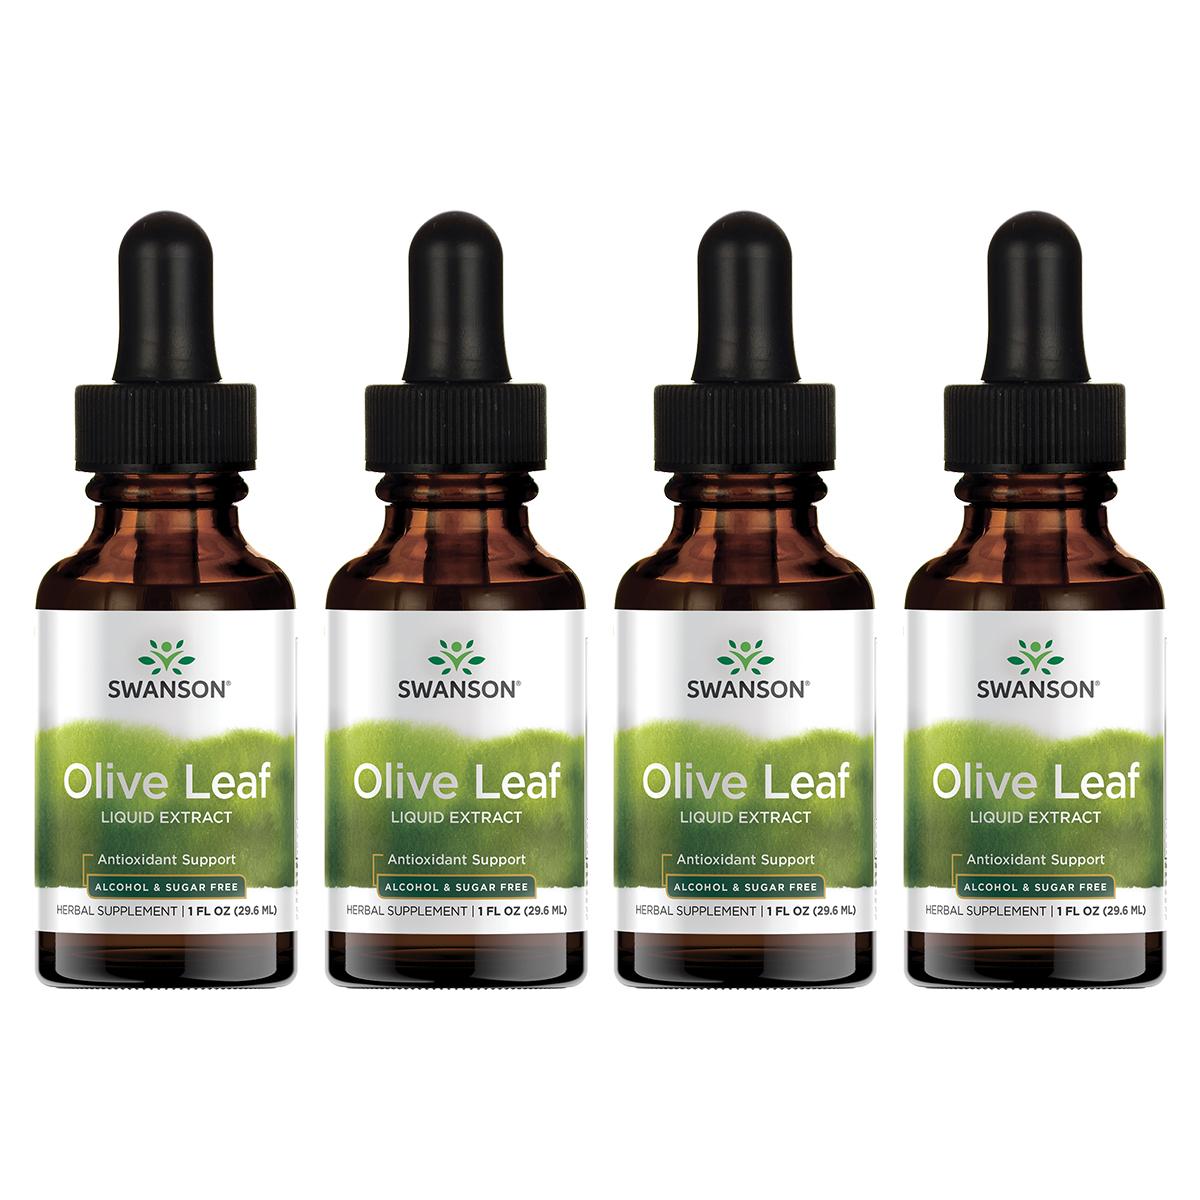 Swanson Premium Olive Leaf Liquid Extract - Alcohol & Sugar Free 4 Pack Vitamin 1.5 G 1 fl oz Liquid